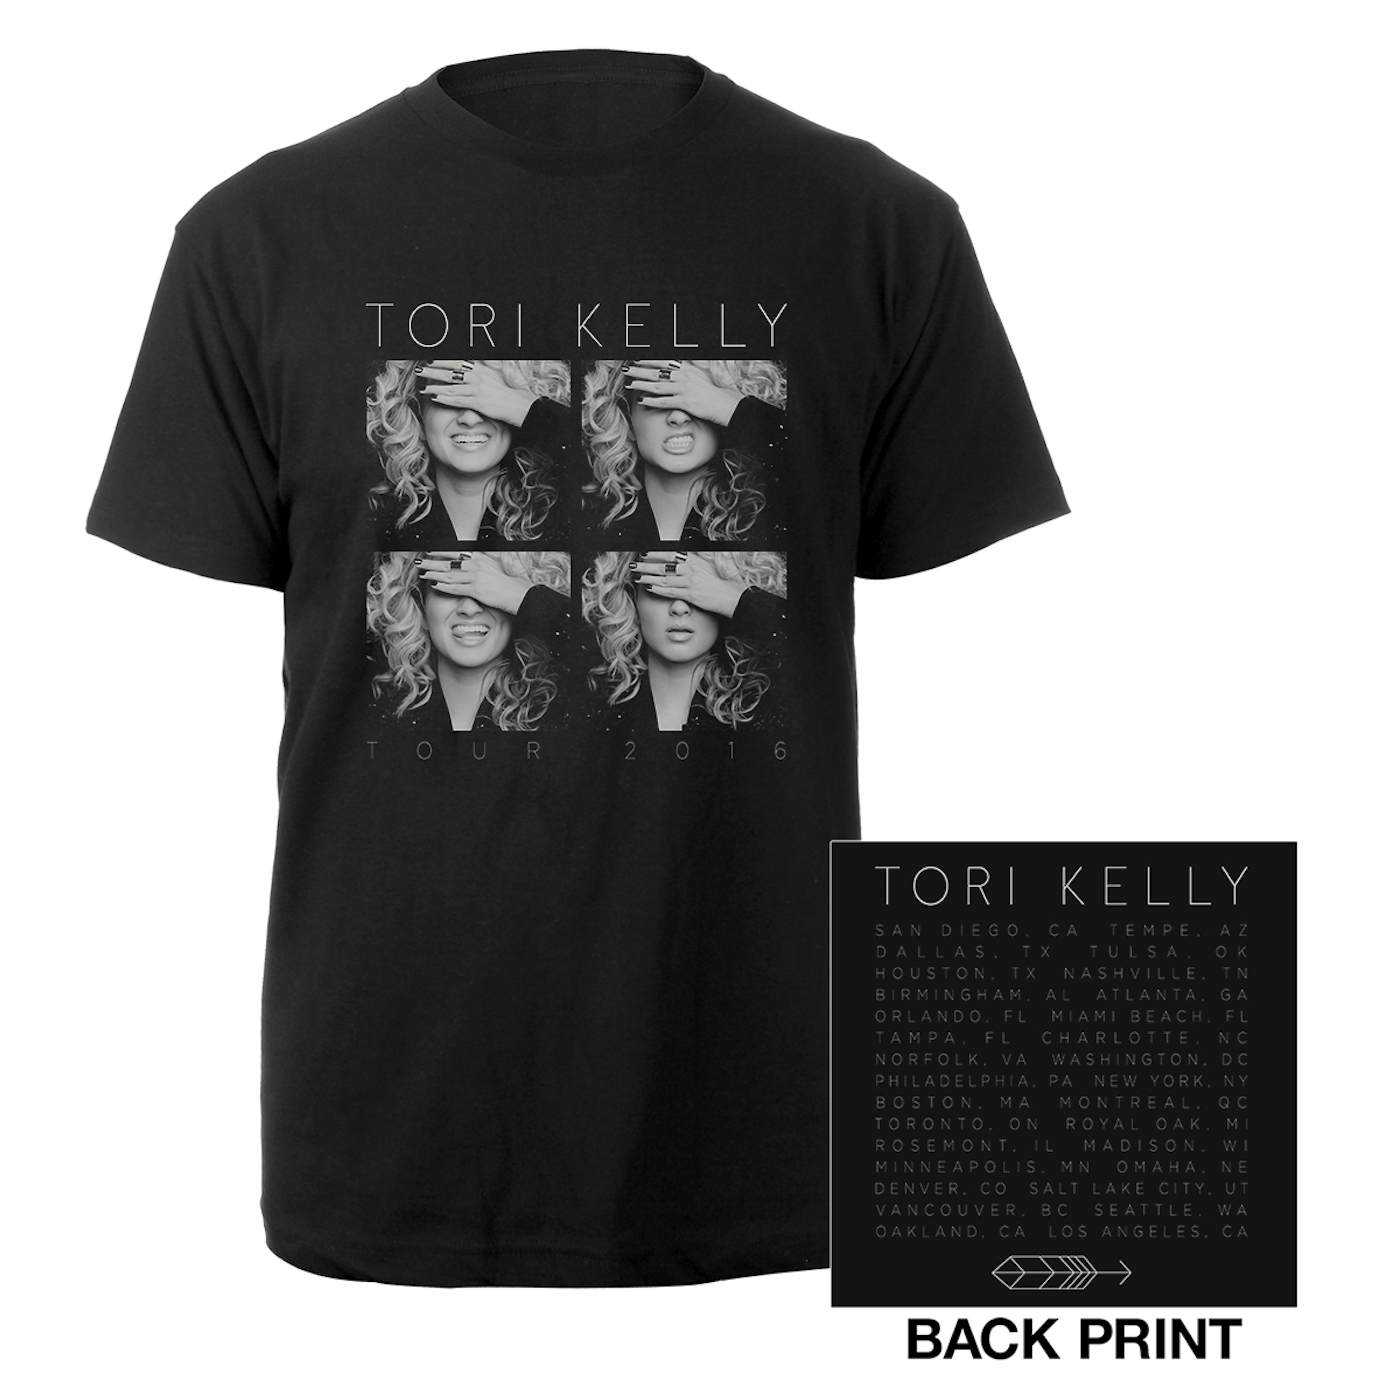 Tori Kelly Unbreakable Tour Itin Tee